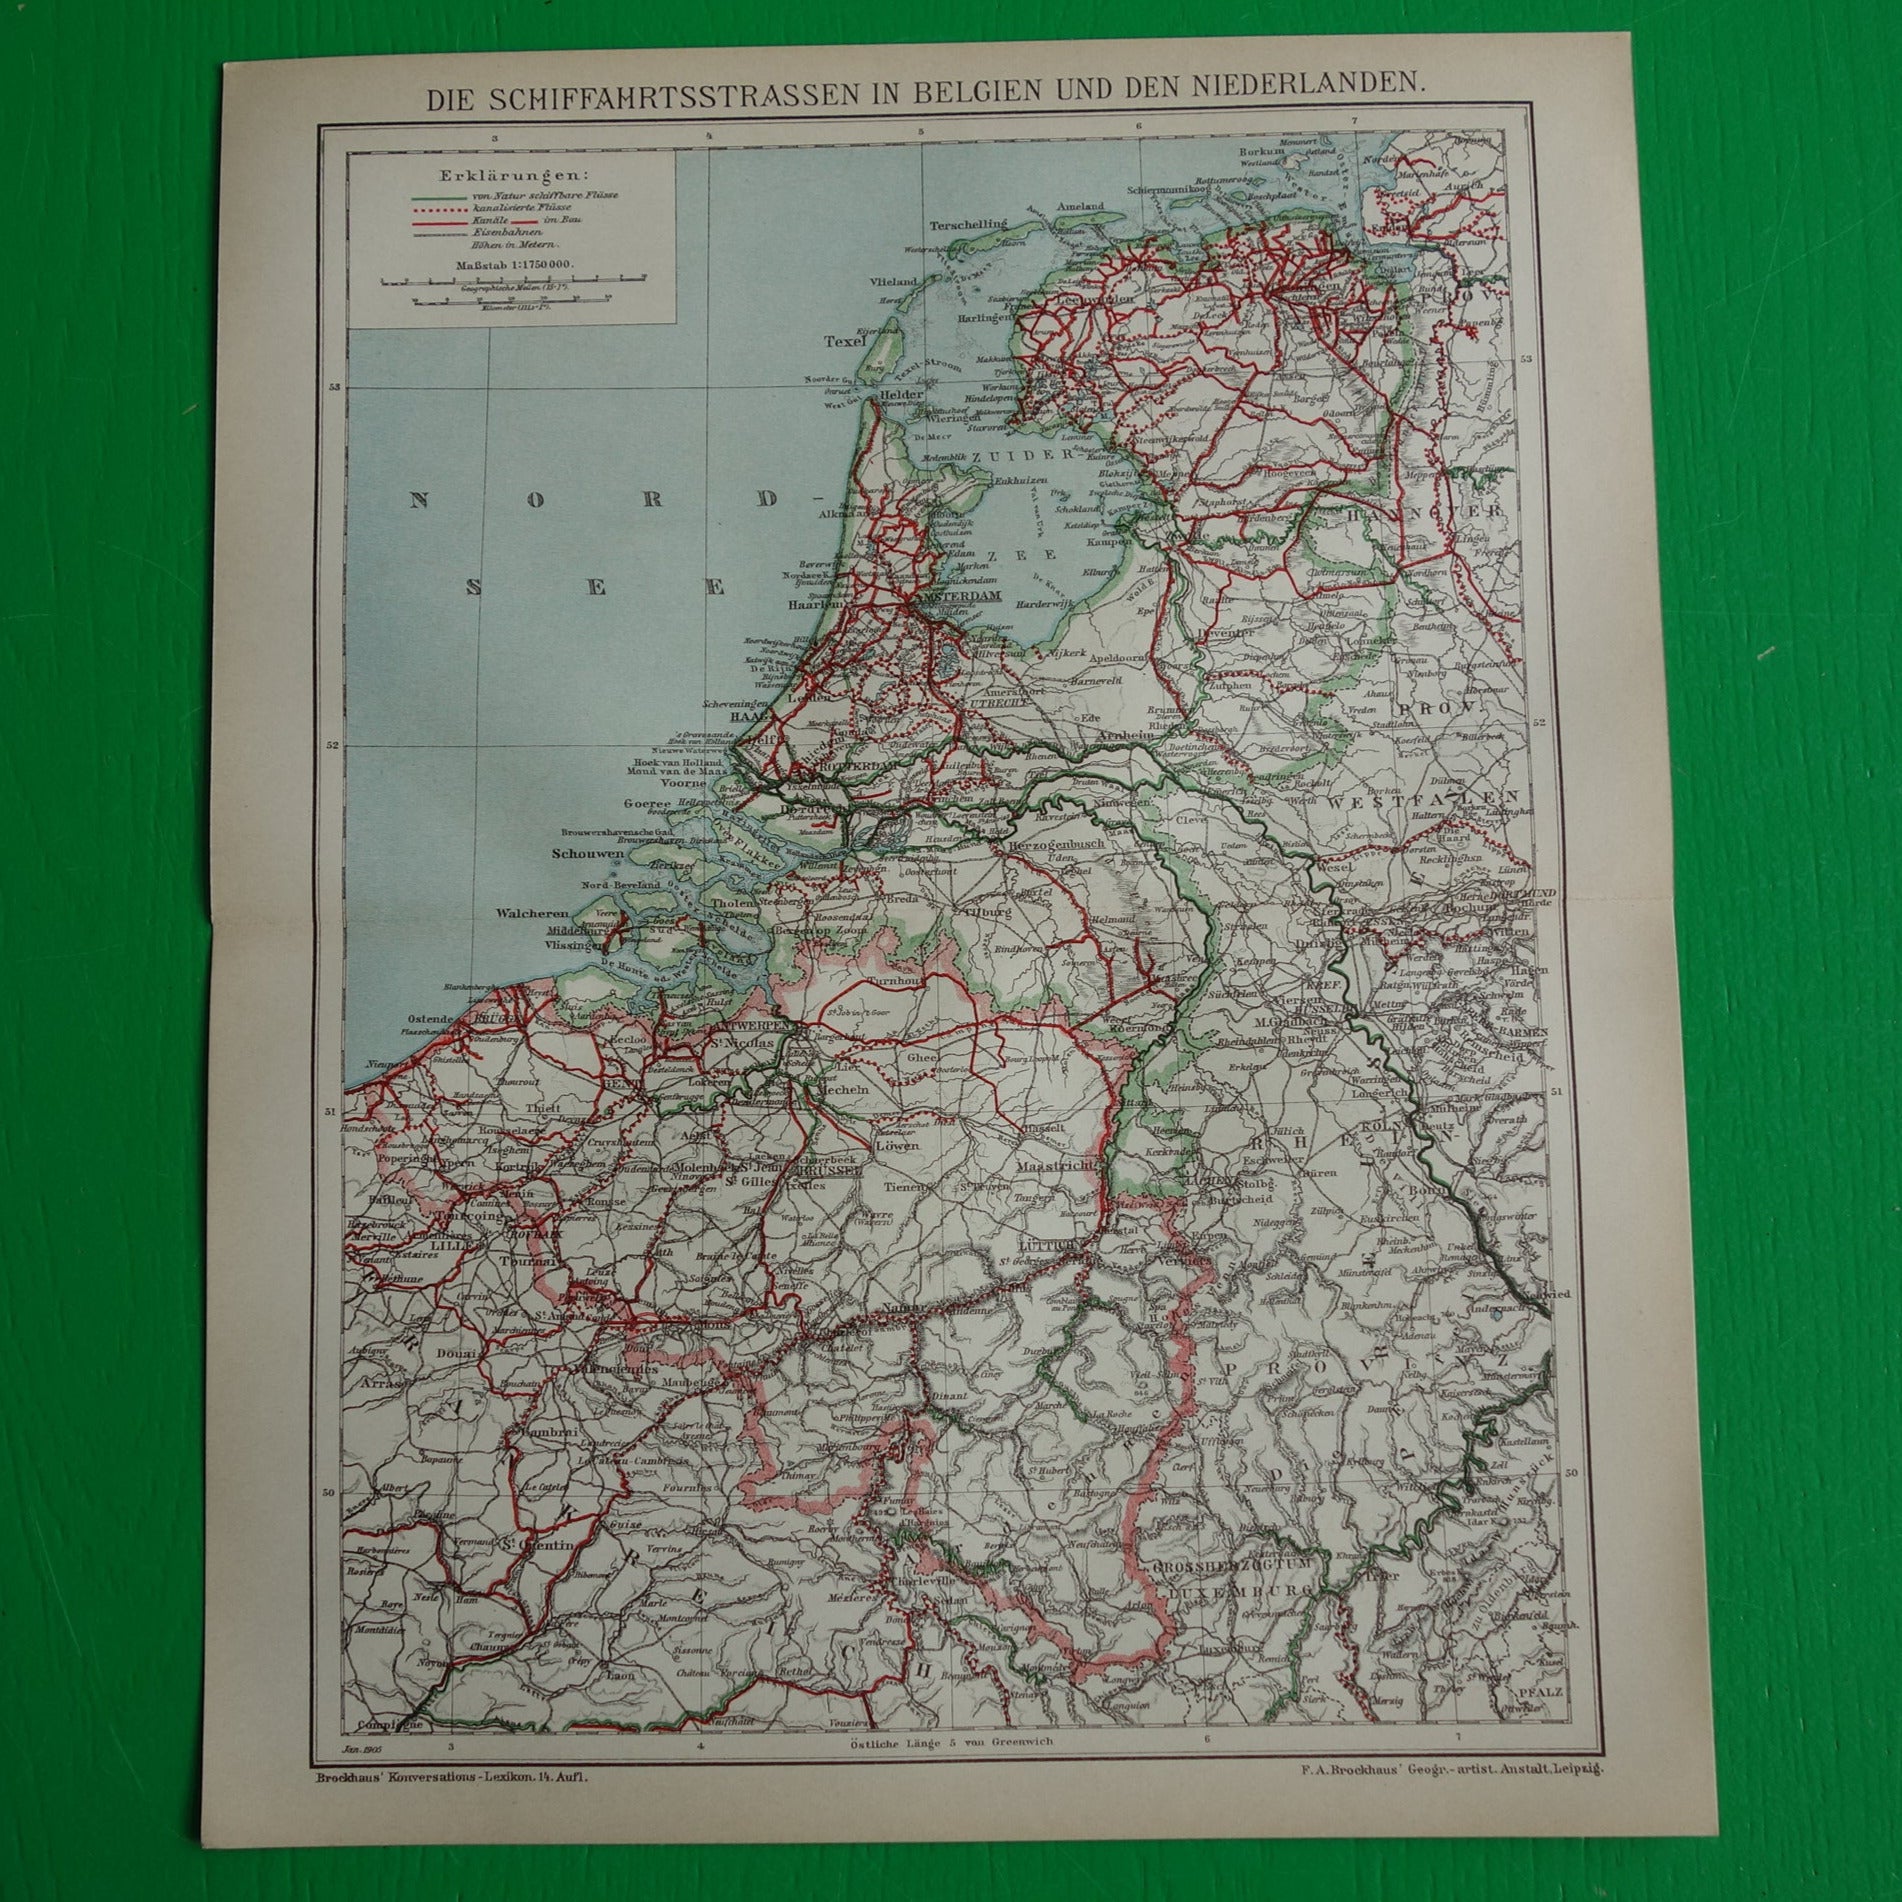 historische kaarten belgie en nederland kopen